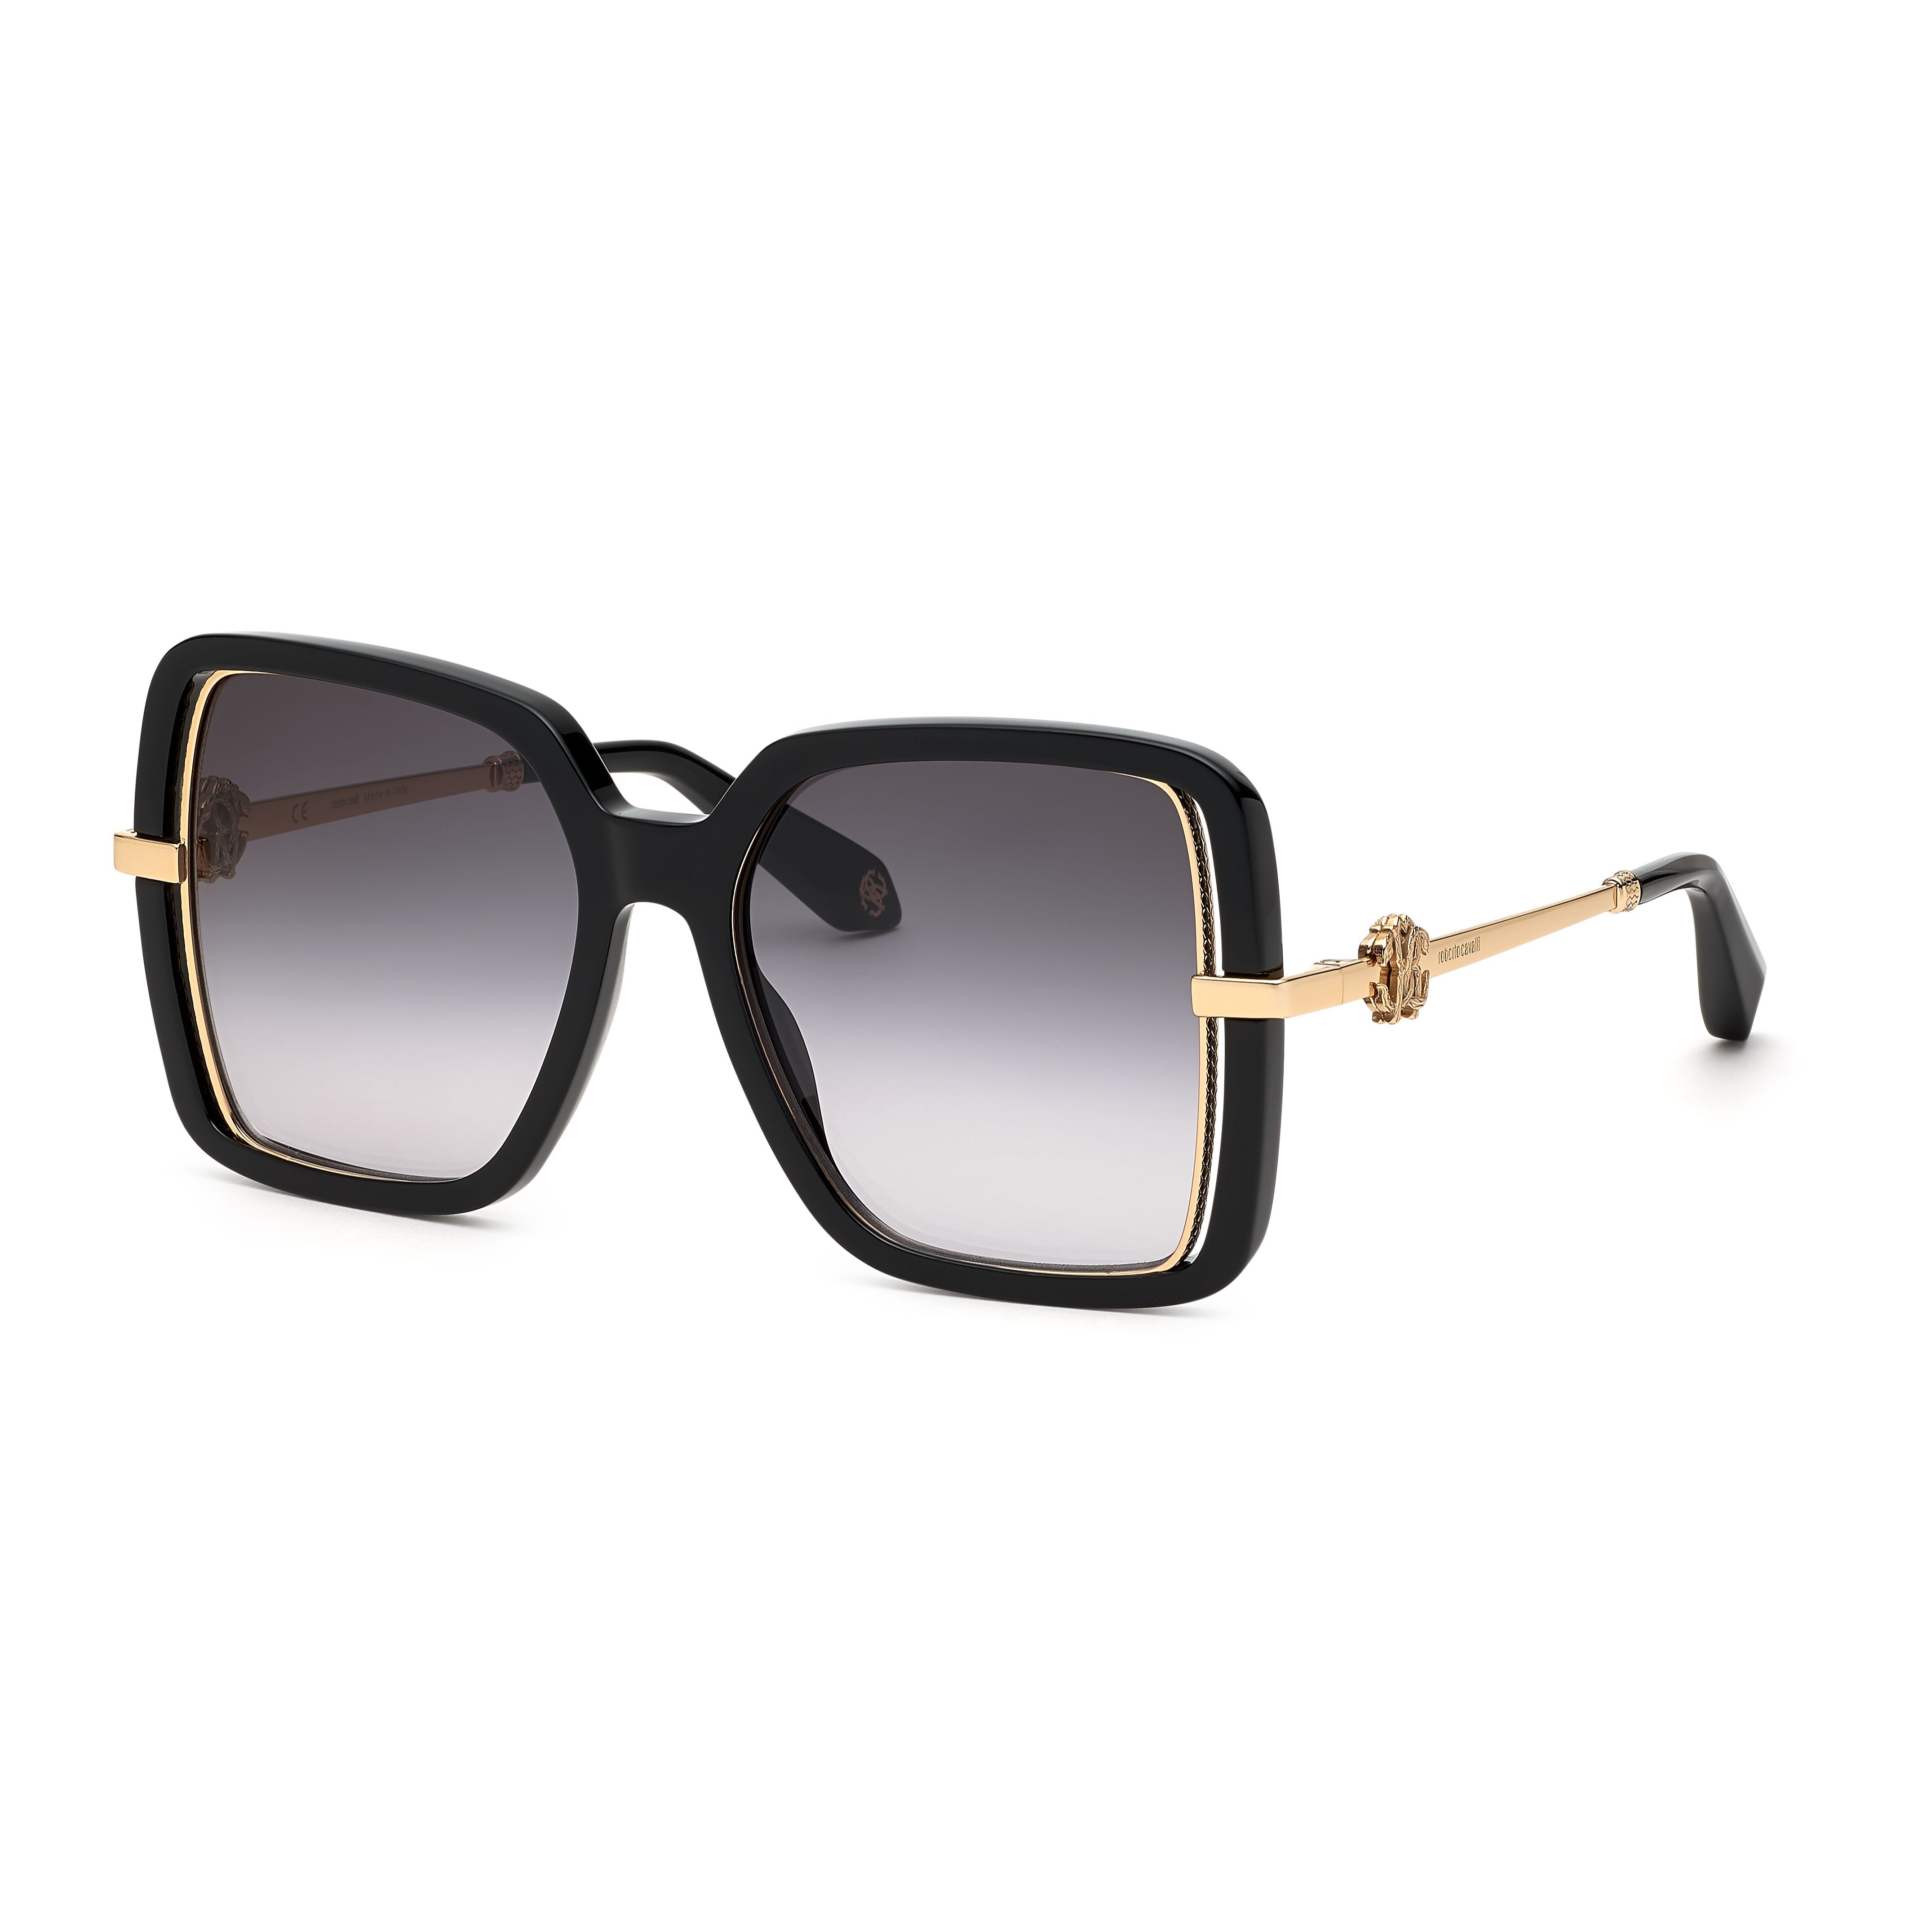 SRC007 Square Sunglasses 700 - size 55